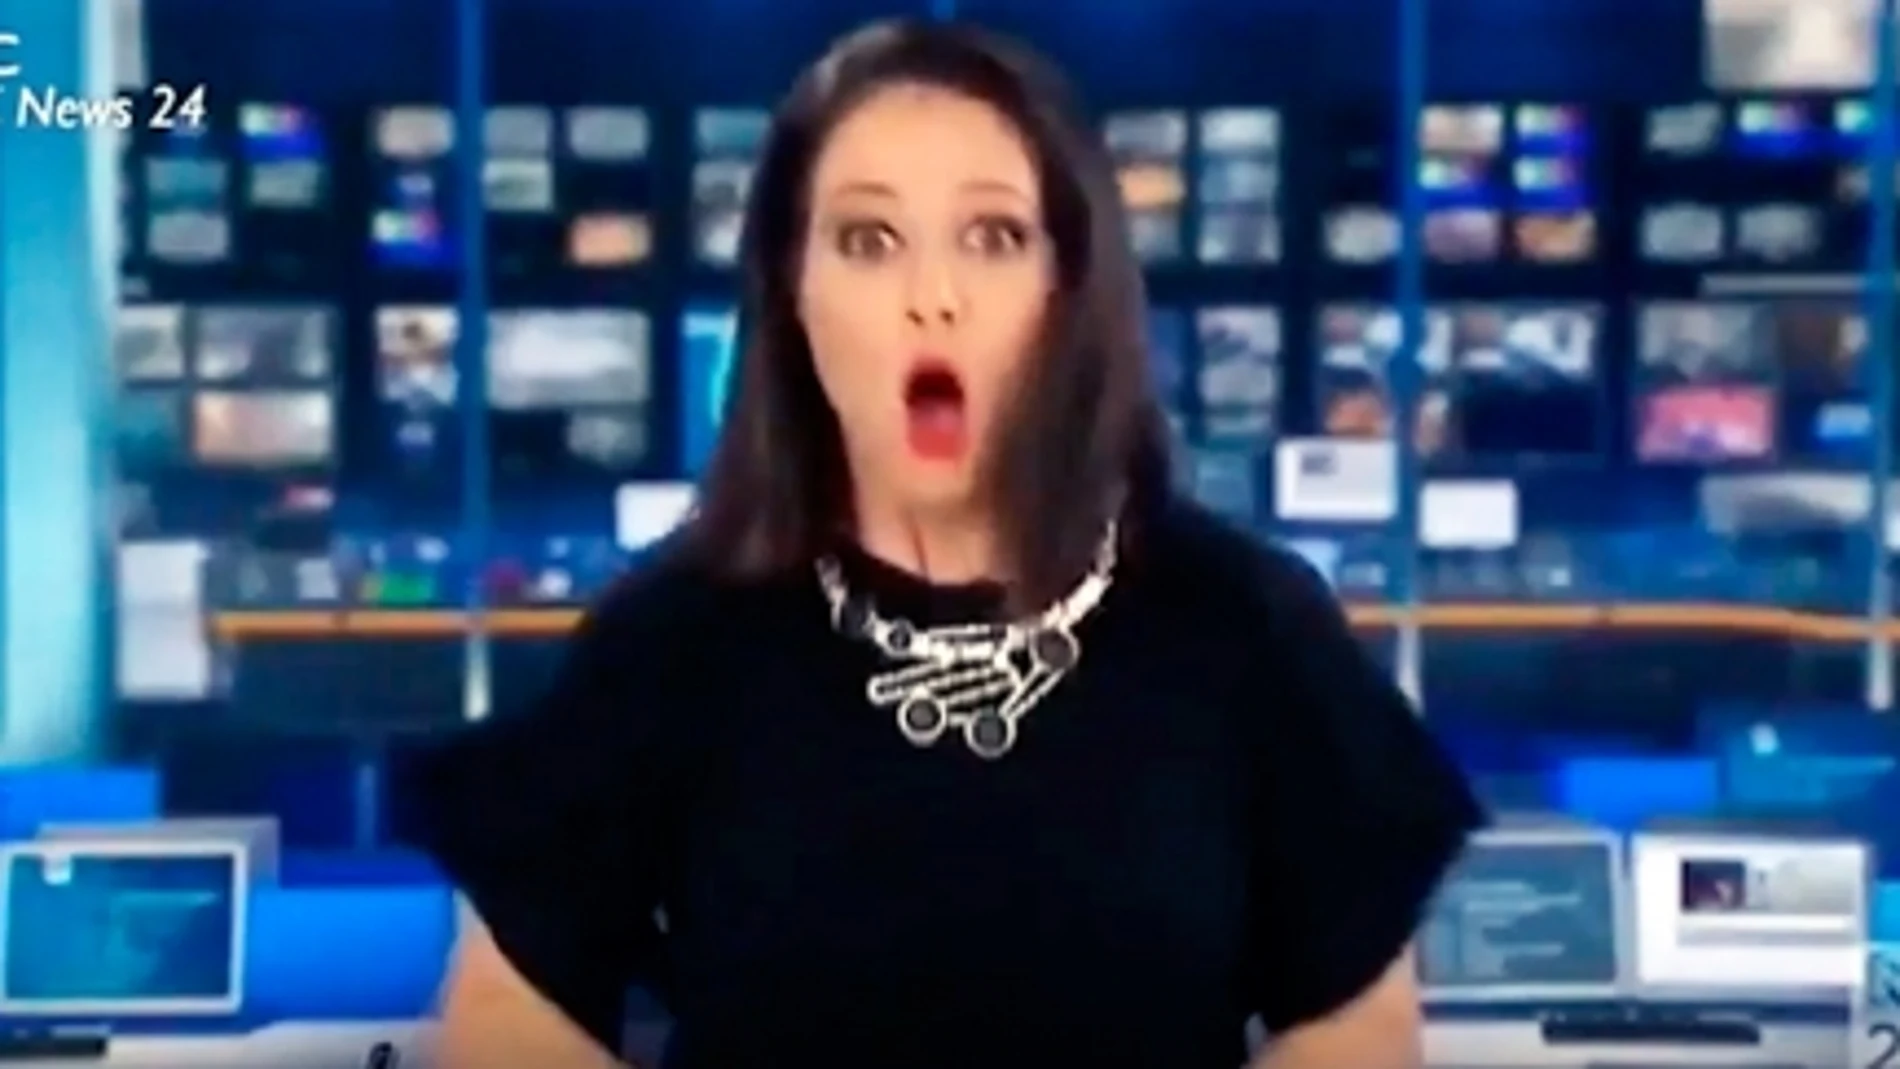 El embarazoso momento de una presentadora de televisión australiana que se hizo viral